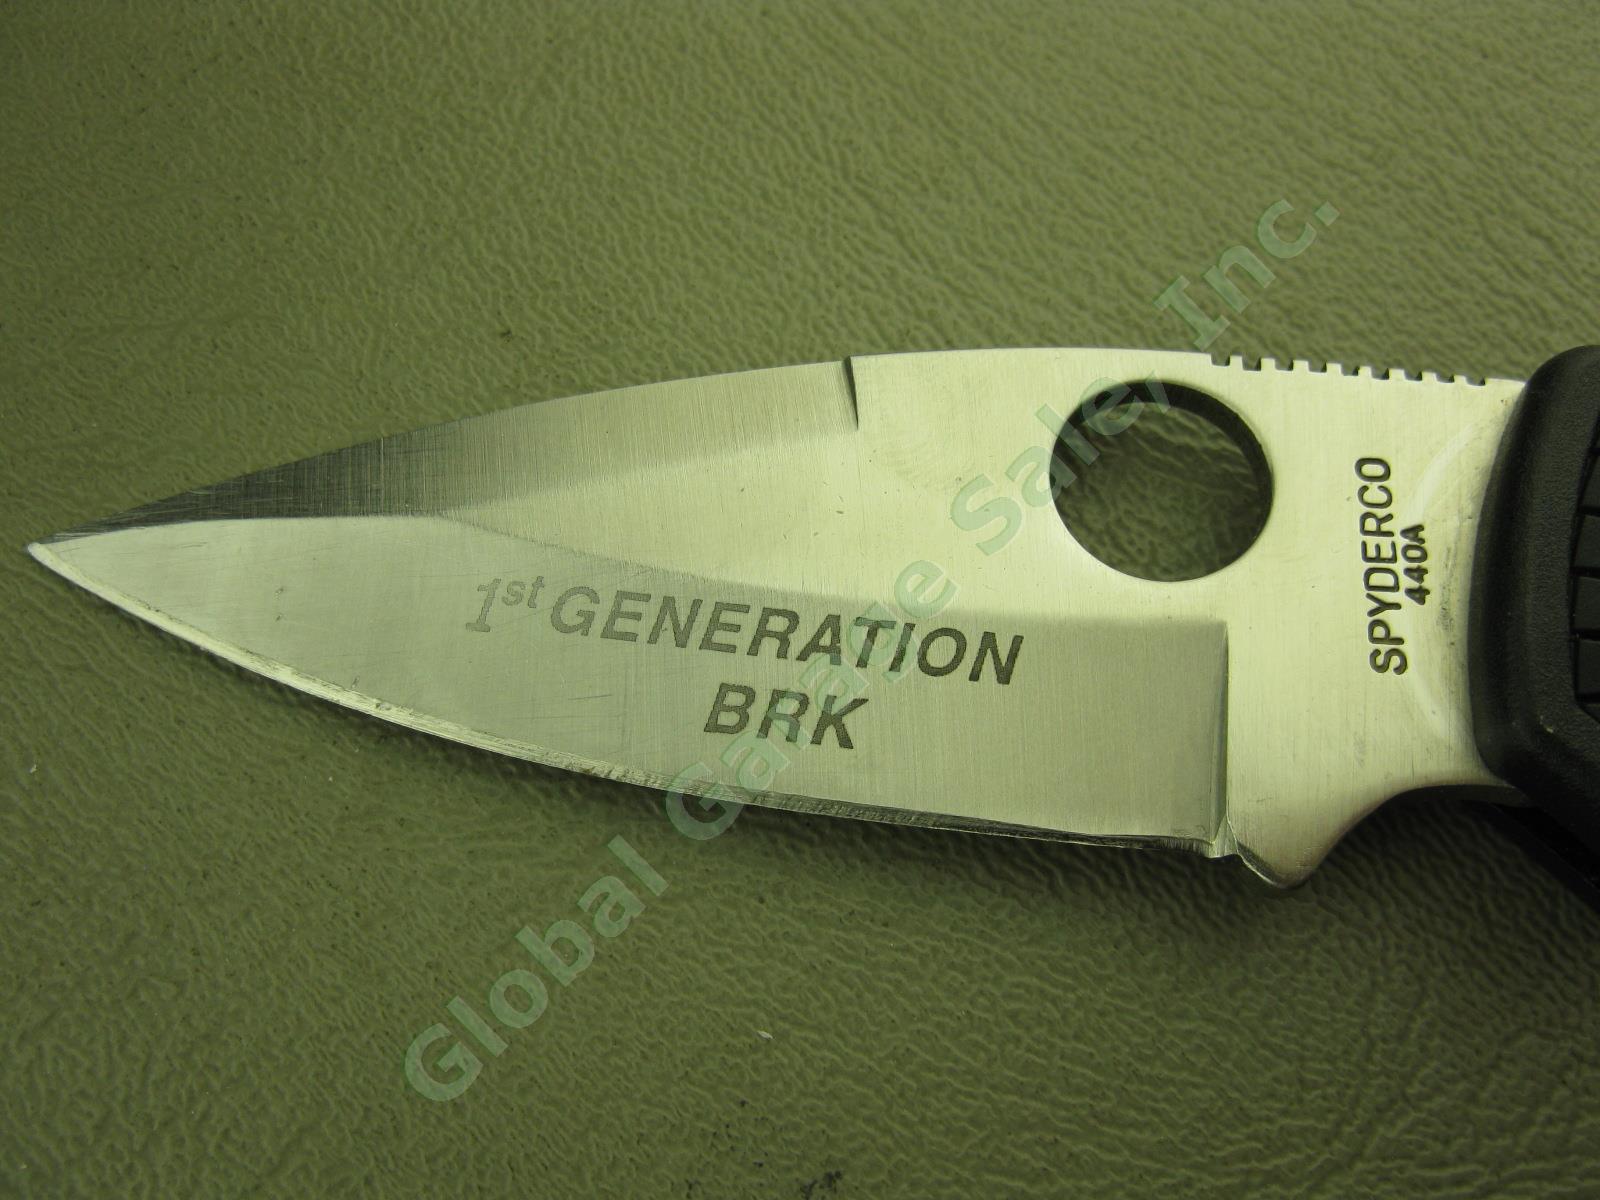 SPYDERCO Native 1st Generation BRK Folding Pocket Knife +Clip Golden CO USA 440A 1